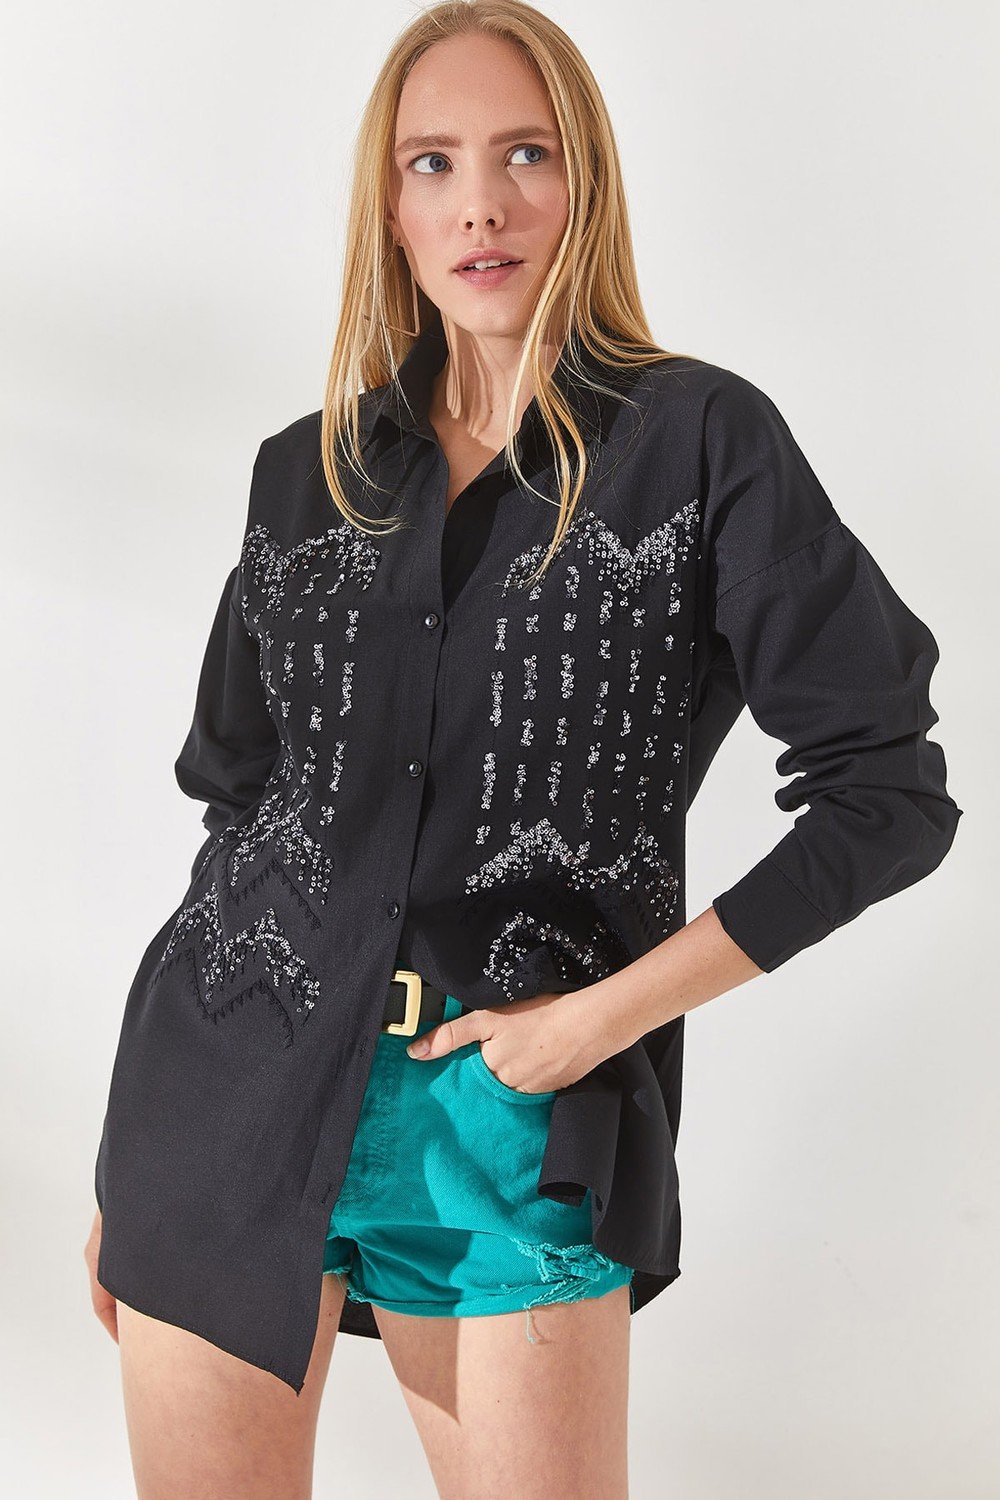 Olalook Women's Geometric Black Sequin Detailed Oversized Shirt